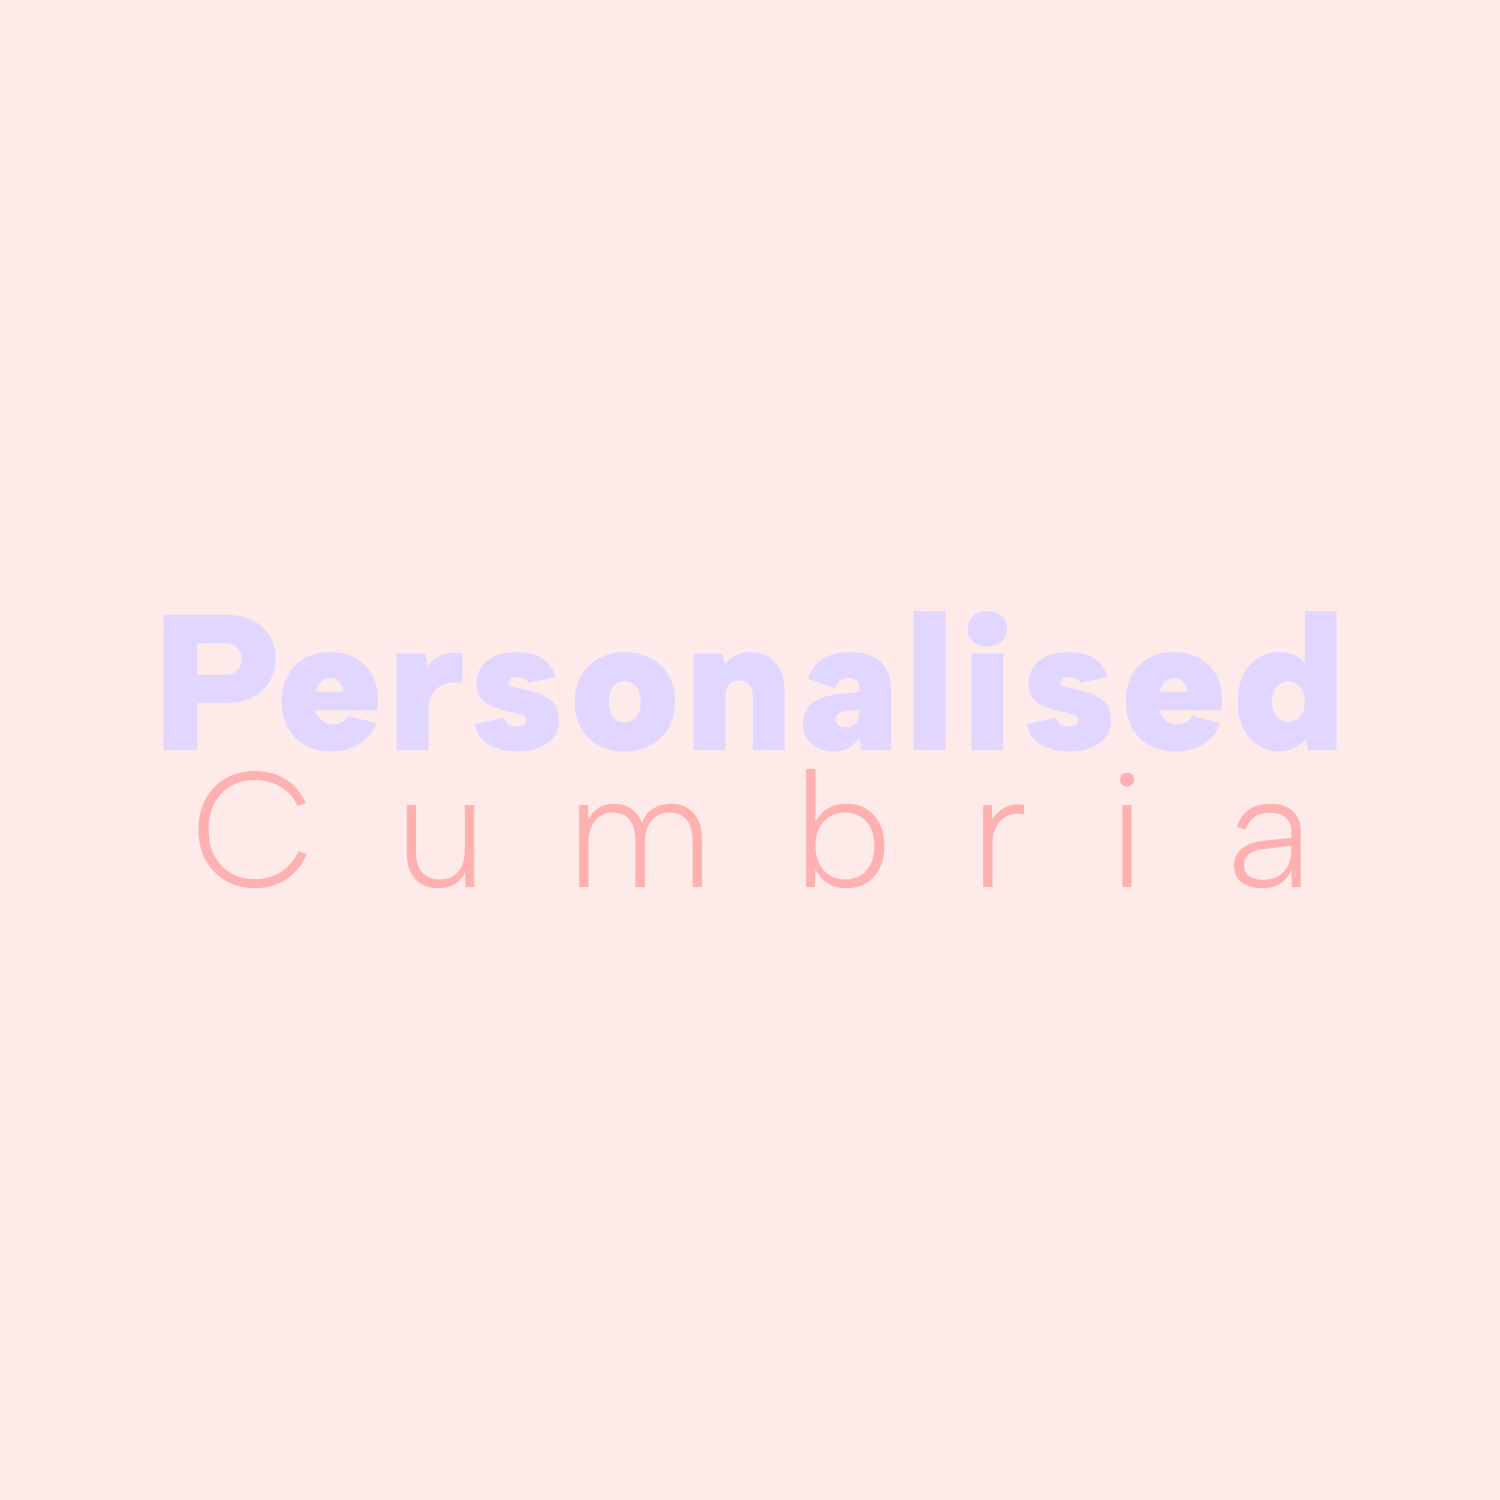 Personalised Cumbria Logo